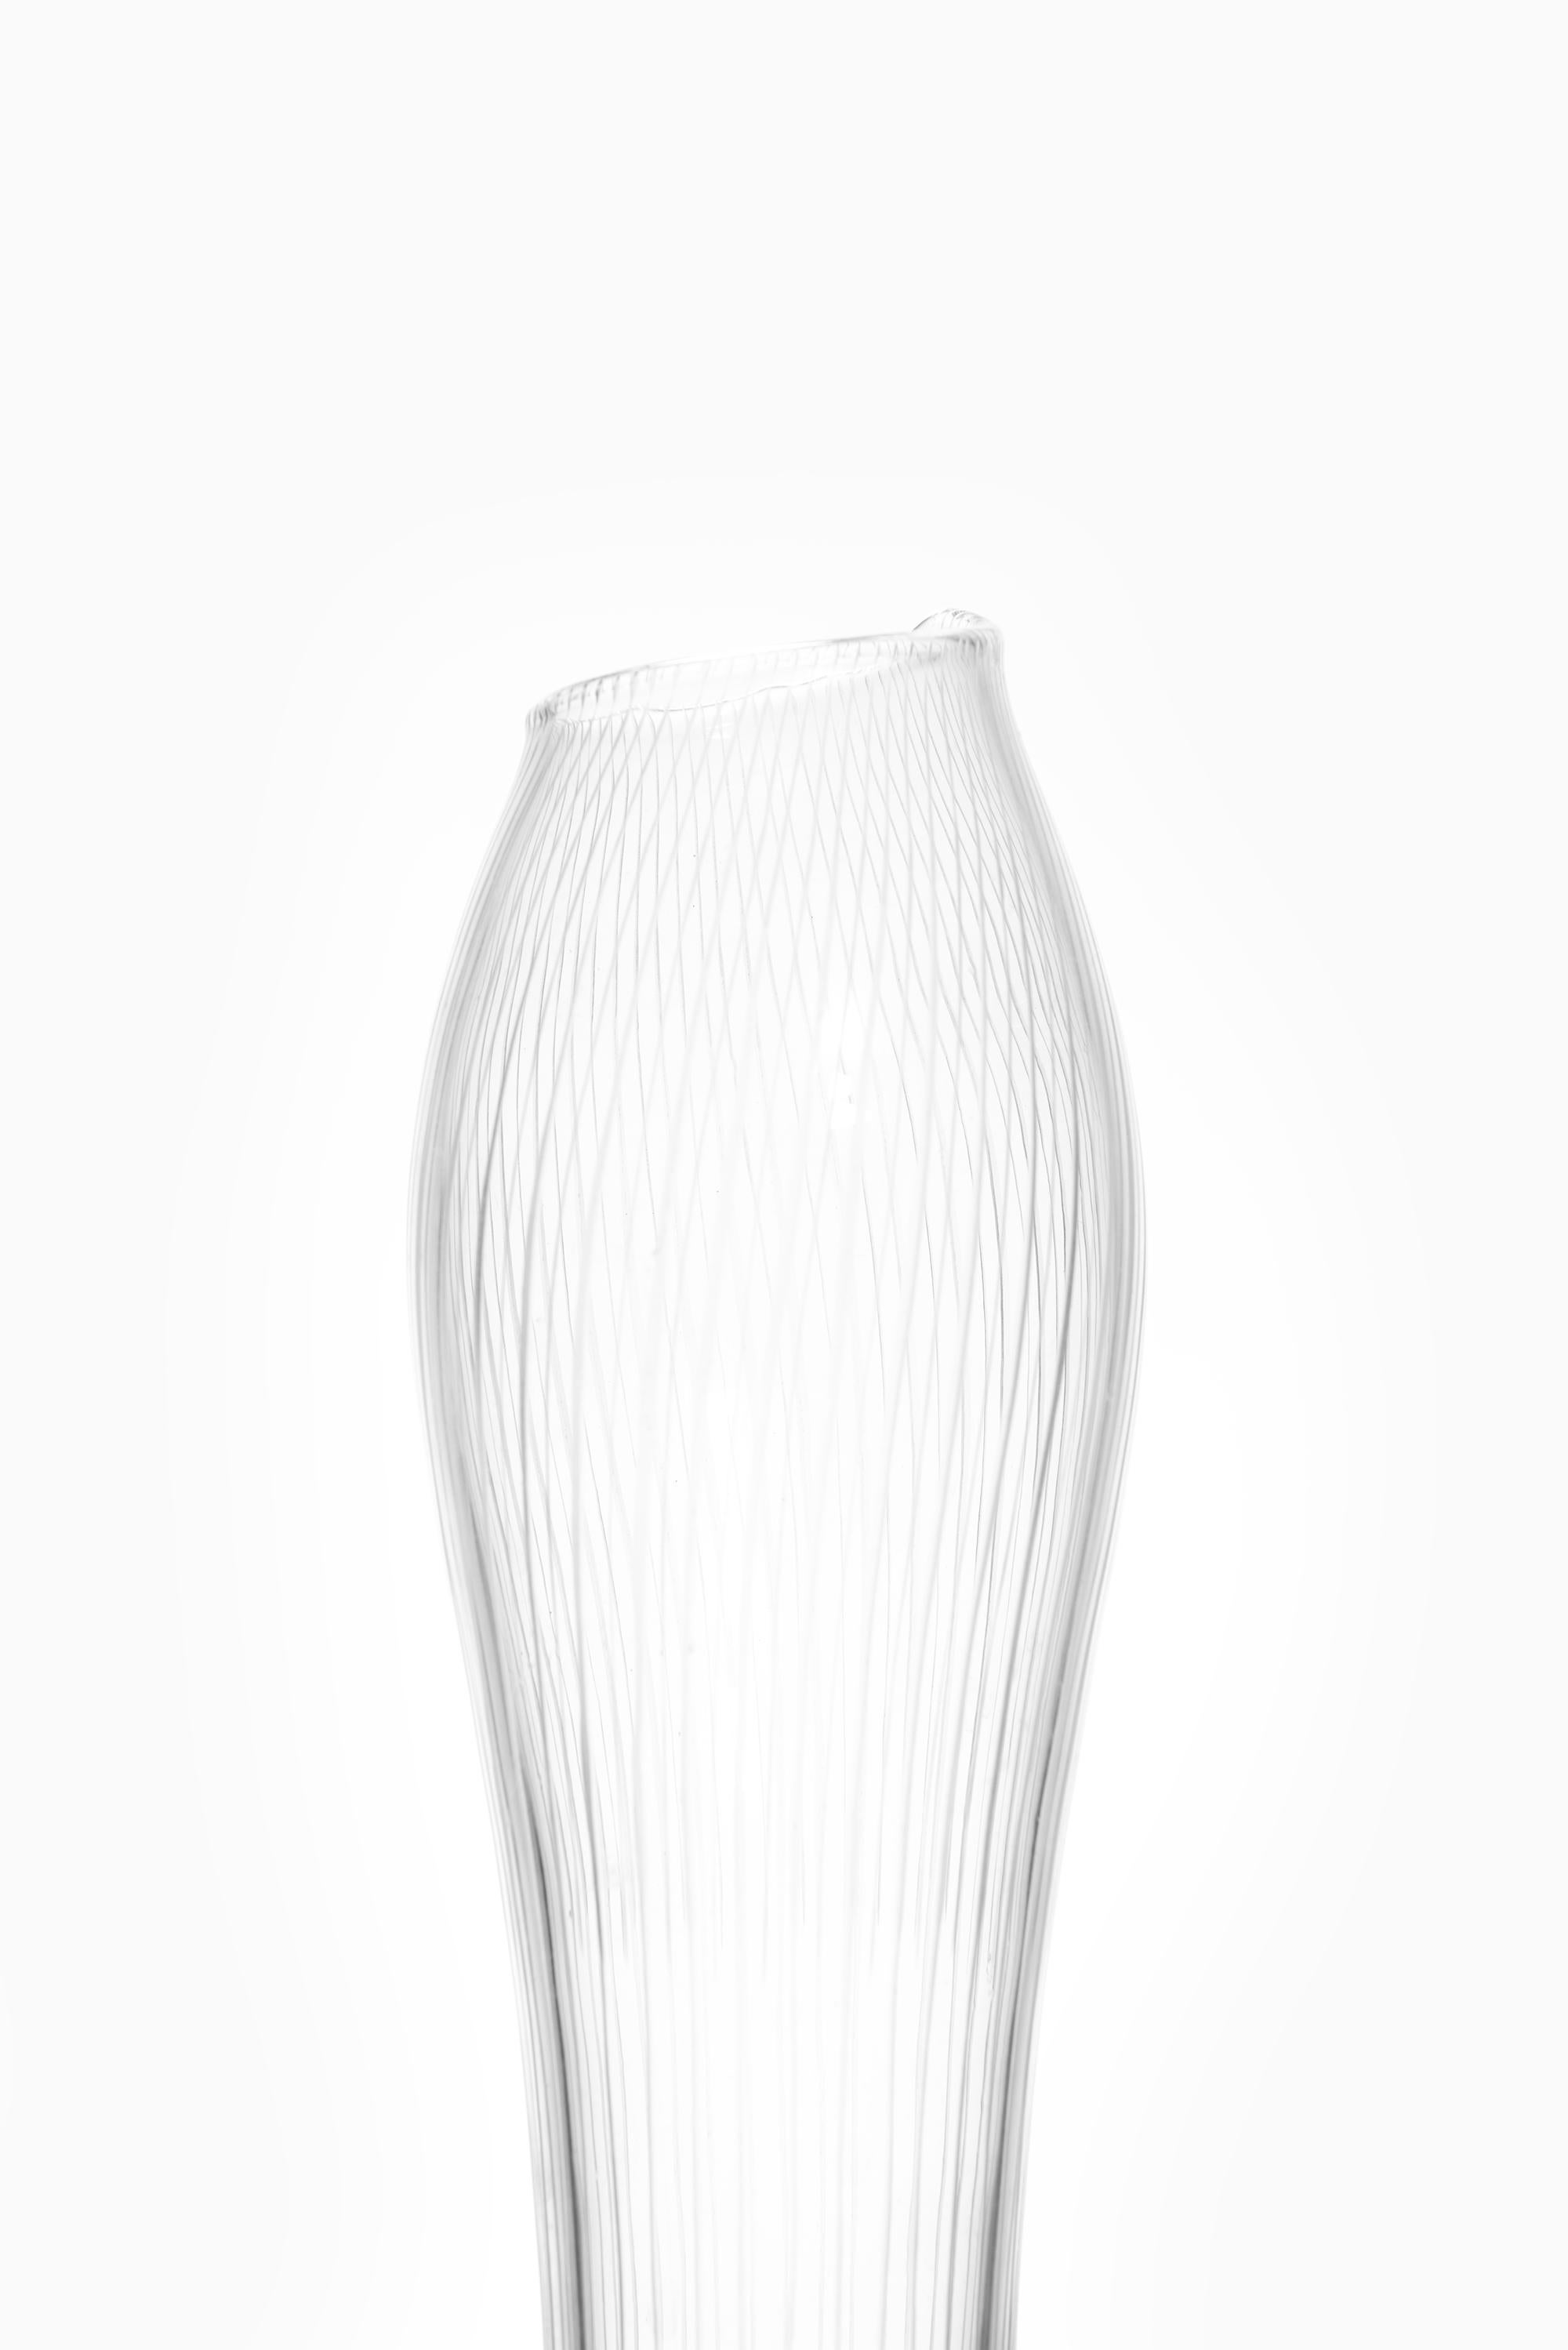 Scandinavian Modern Tapio Wirkkala Glass Vase Produced by Iittala in Finland For Sale